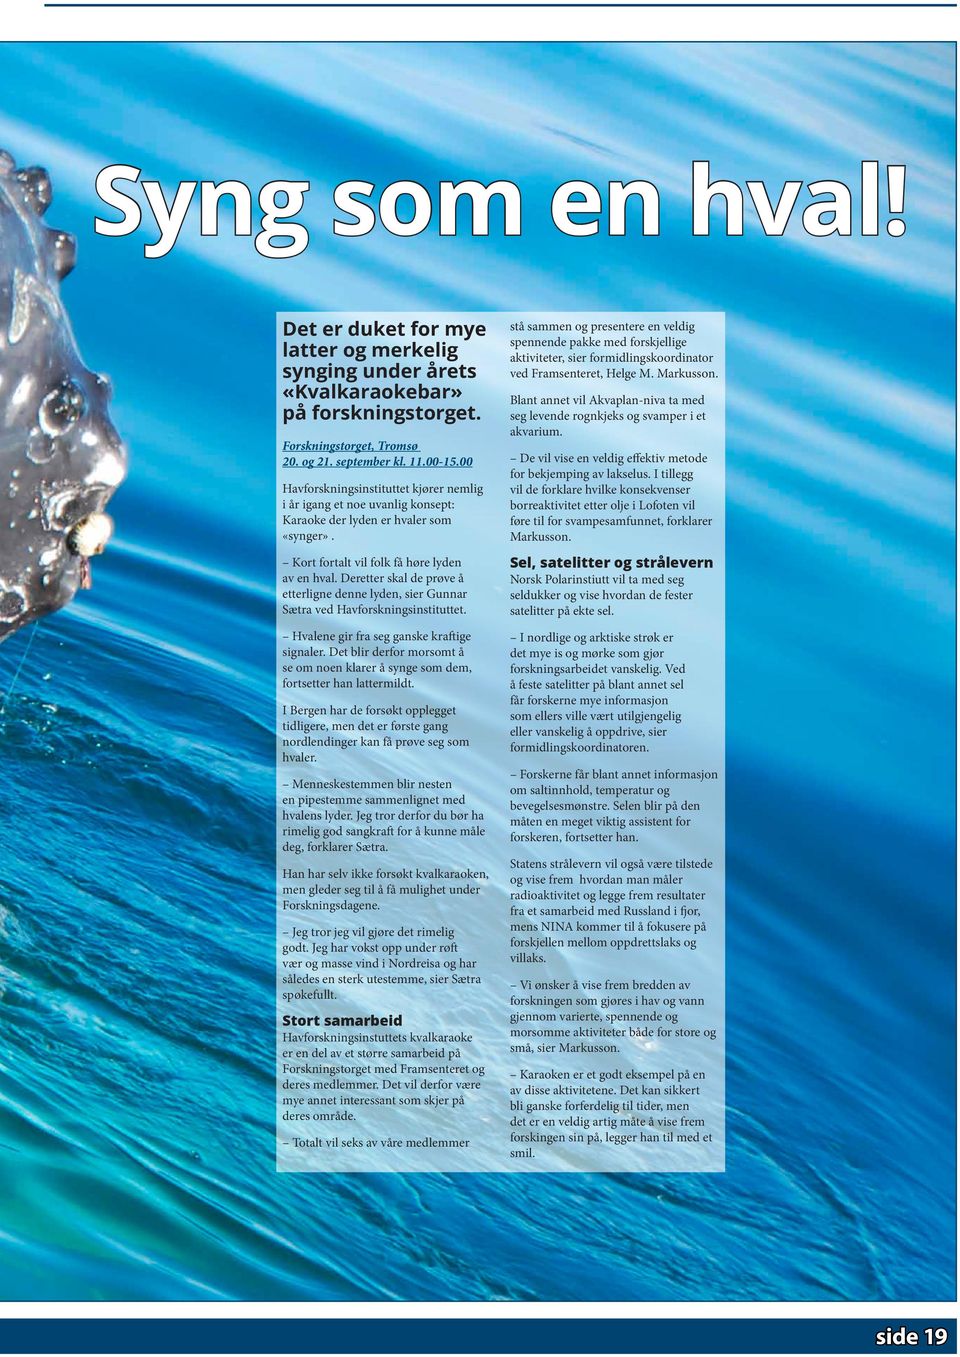 Deretter skal de prøve å etterligne denne lyden, sier Gunnar Sætra ved Havforskningsinstituttet. Hvalene gir fra seg ganske kraftige signaler.